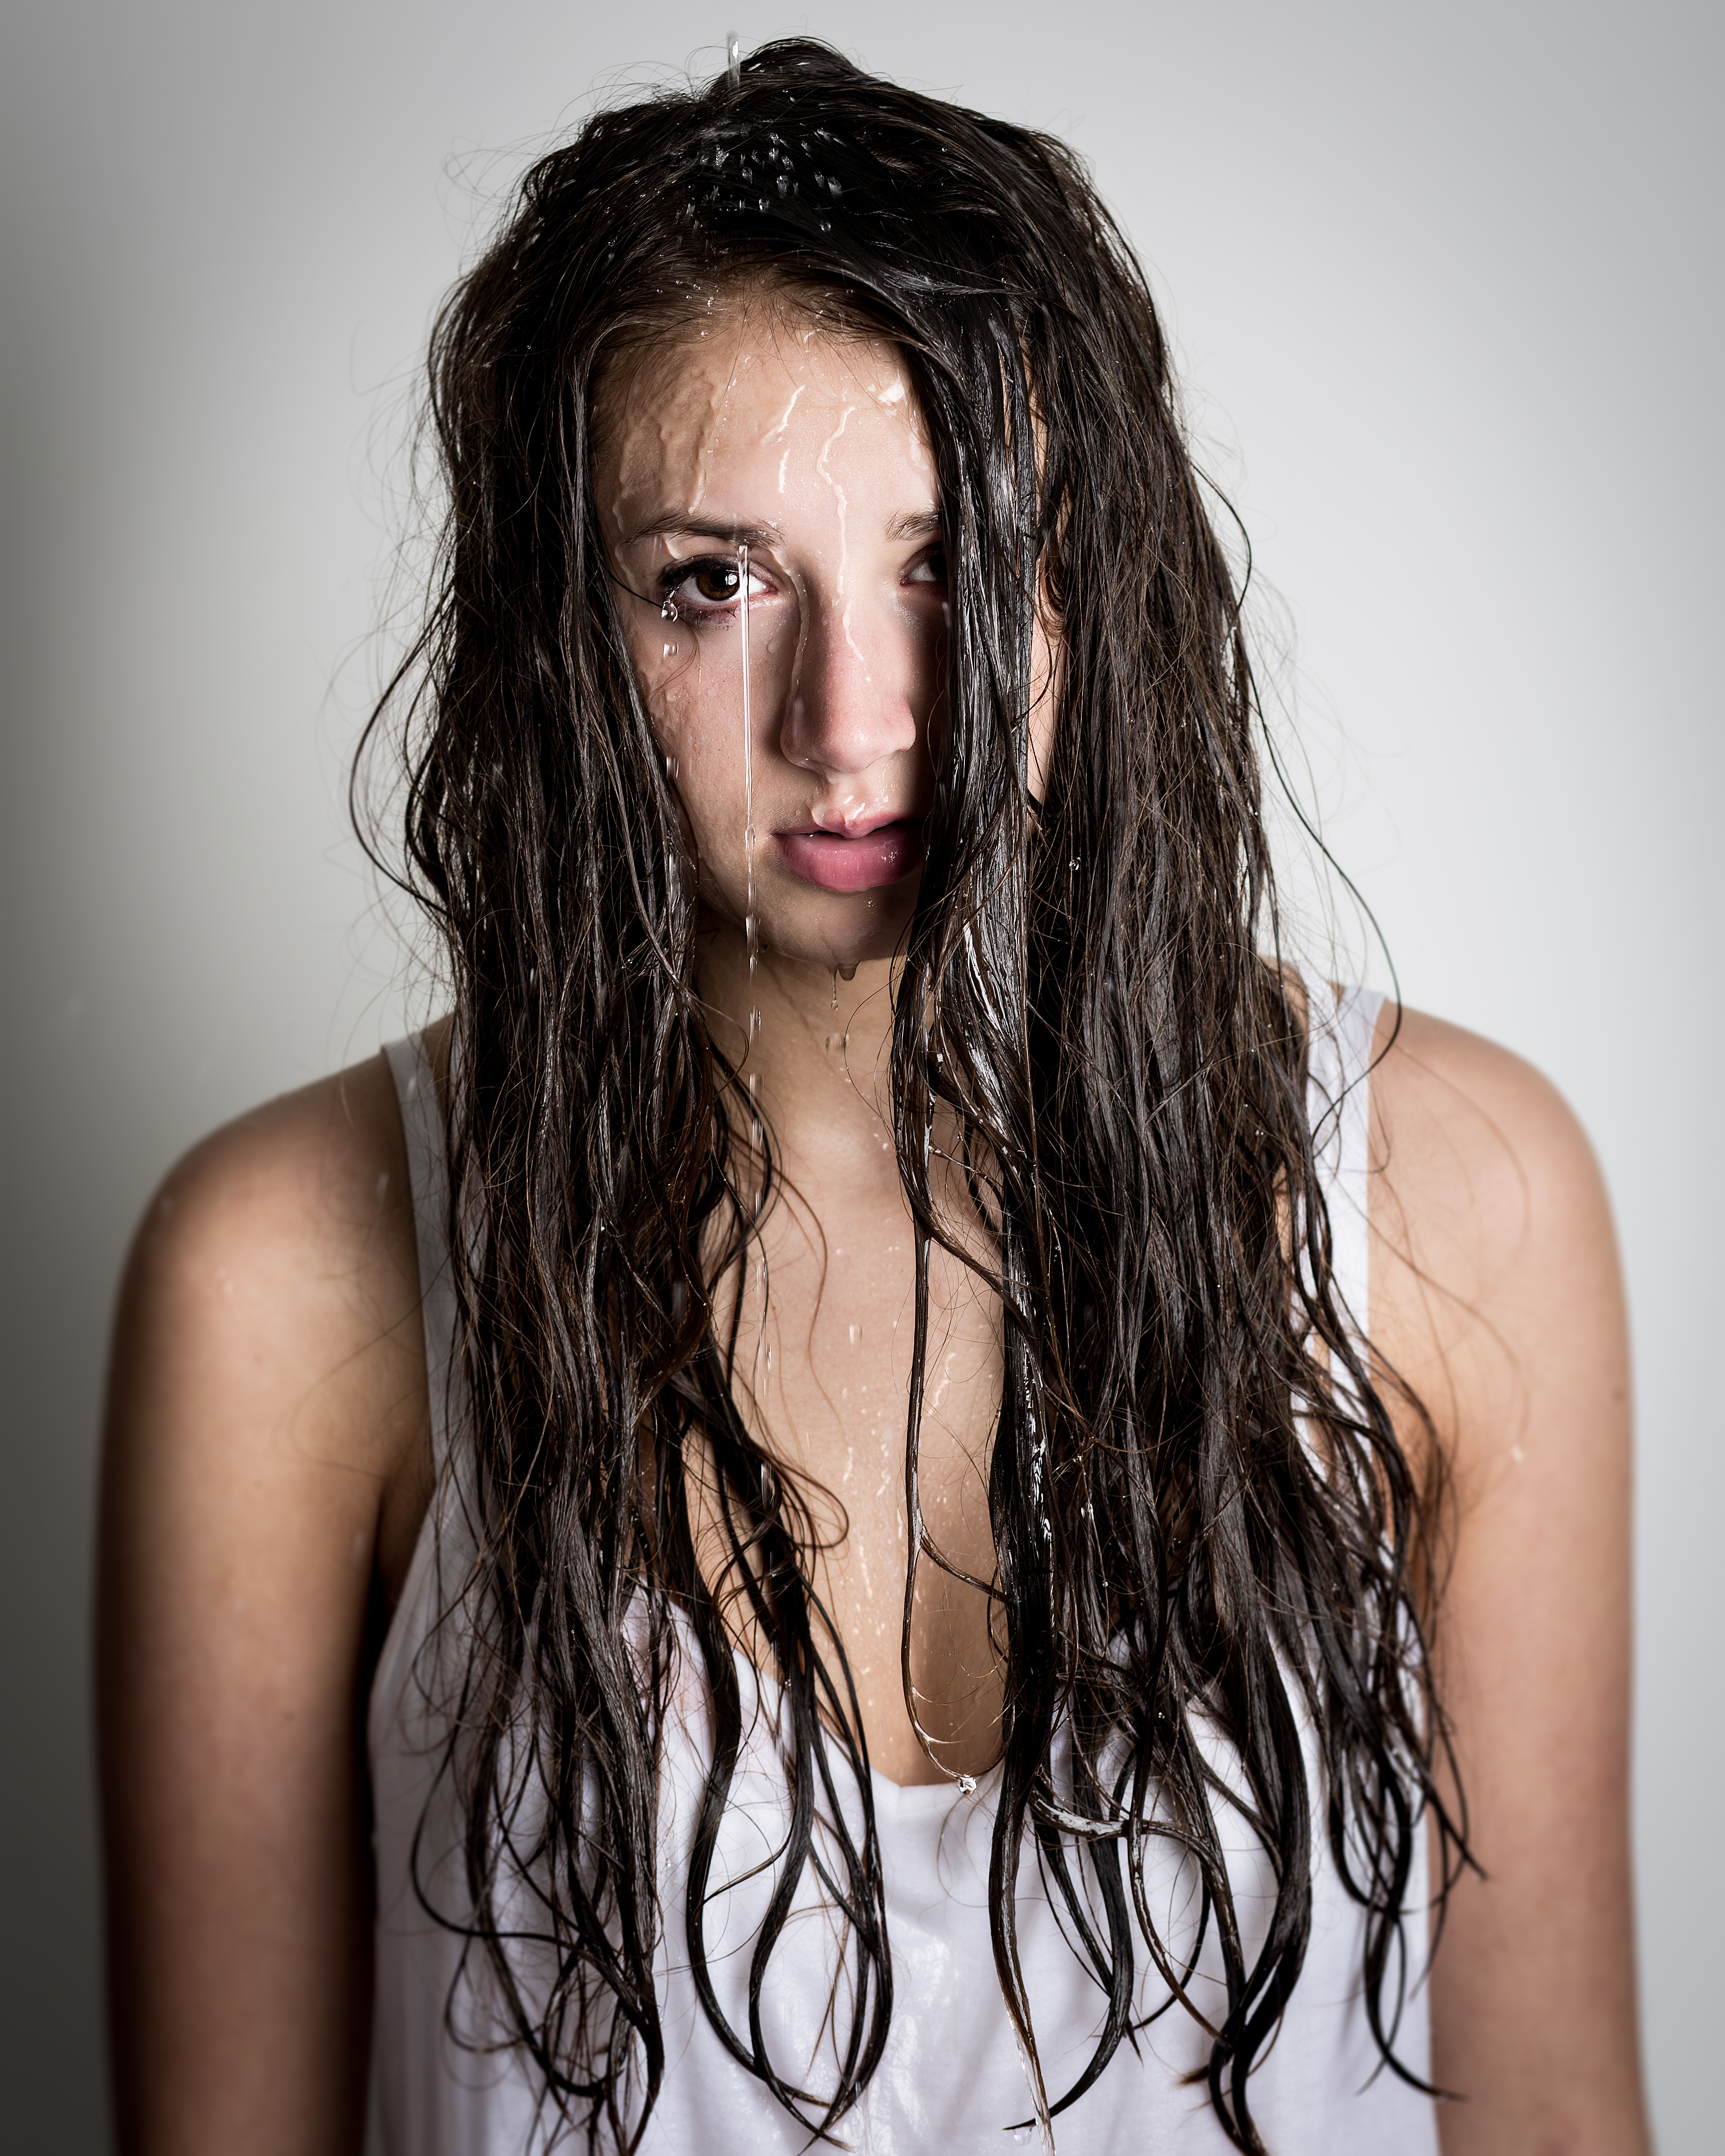 Adolescente con agua cayéndole por la cara y el pelo | Fuente: Shutterstock.com